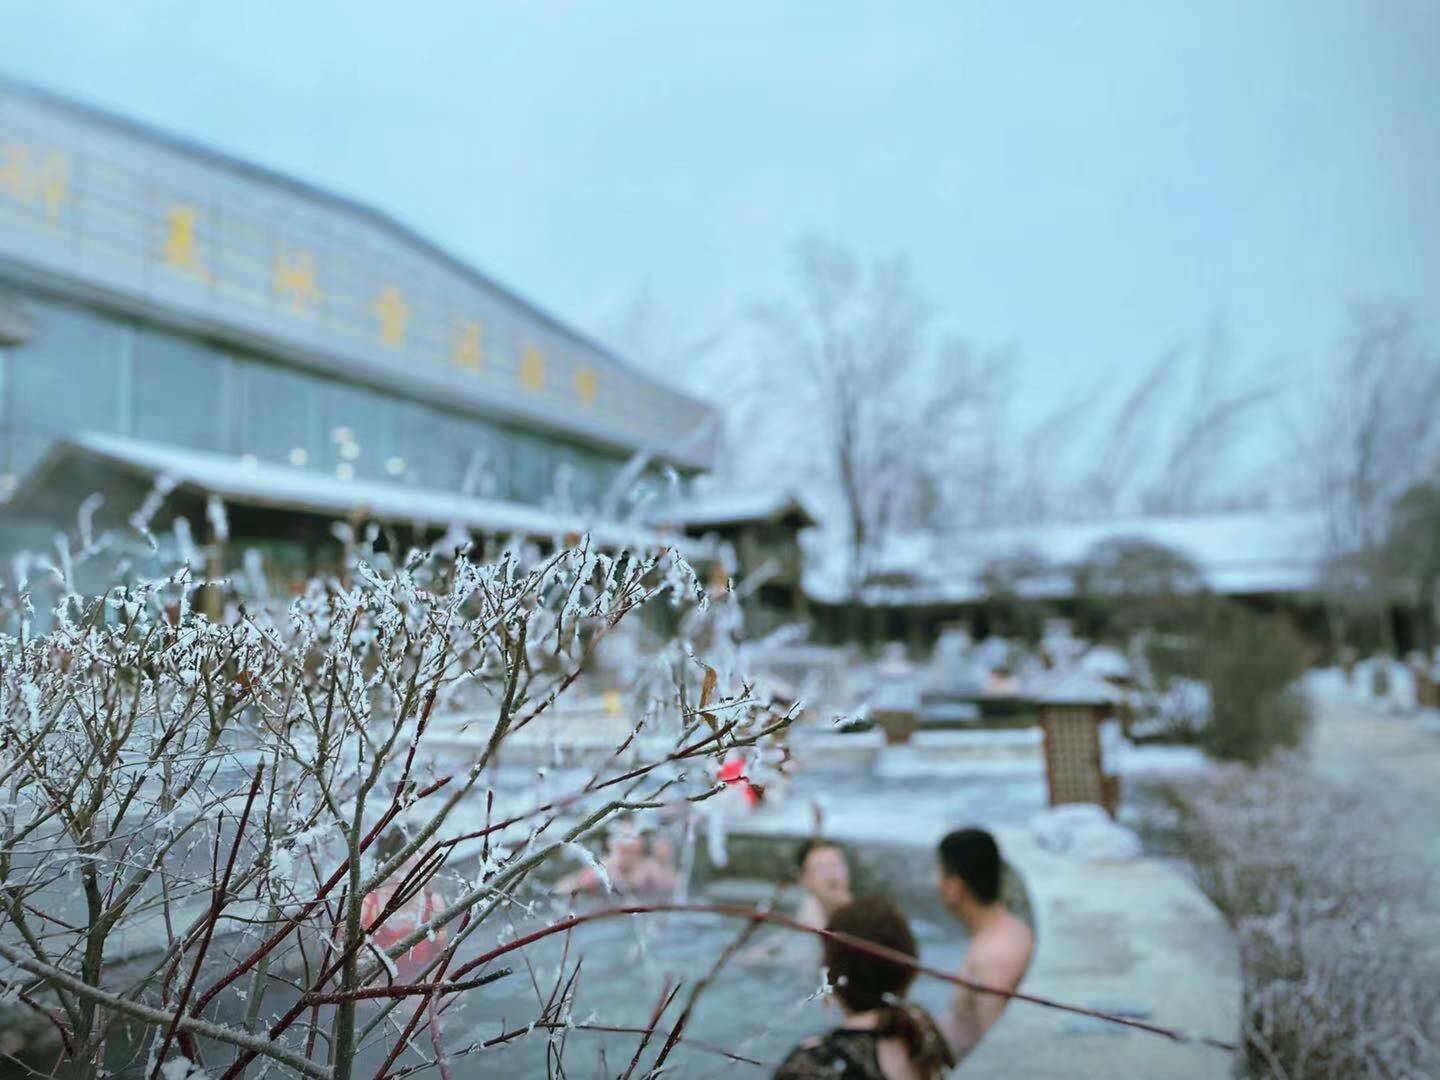 看落雪、赏冰花、泡温泉……冬季，在冰天雪地的北国江城感受冰火两重天的乐趣